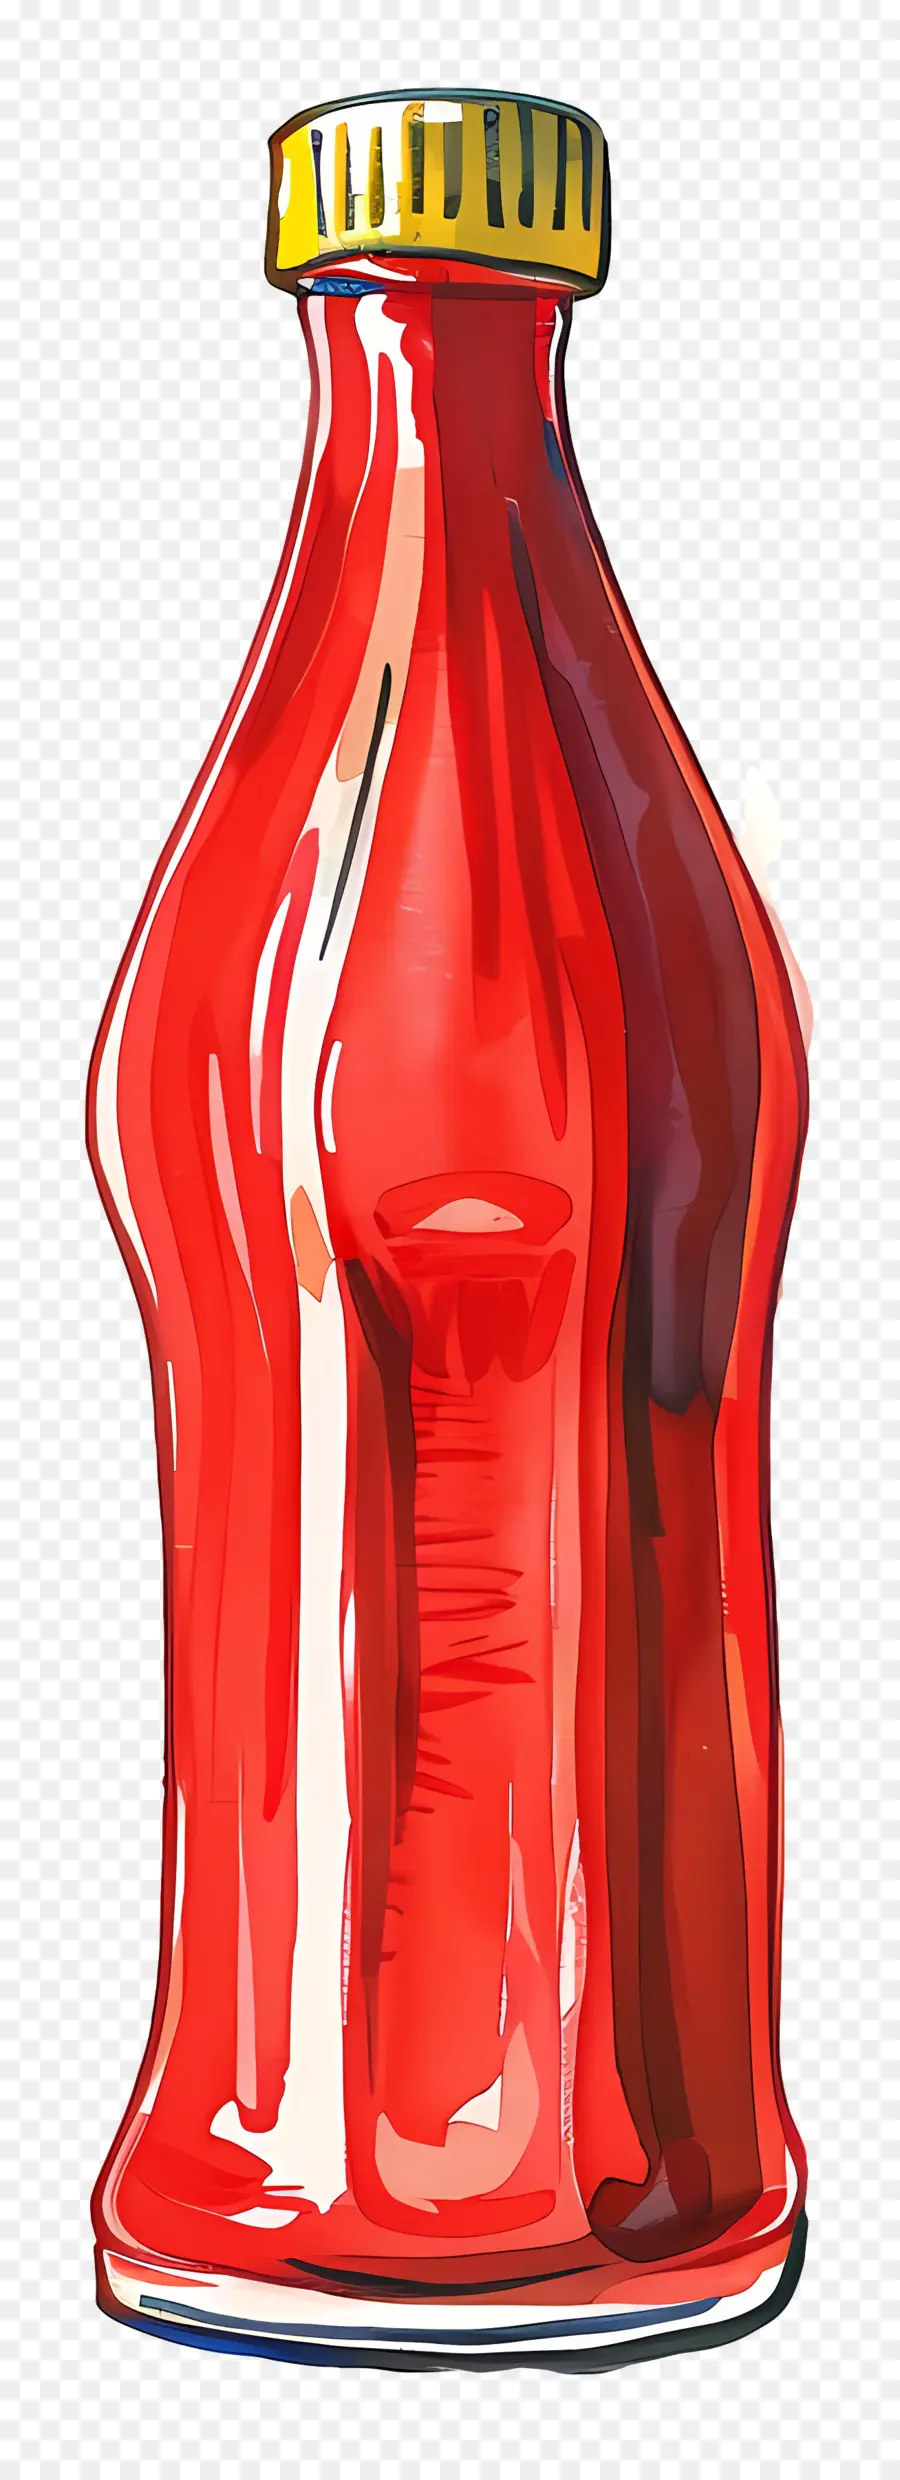 زجاجة الكاتشب，زجاجة زجاجية حمراء PNG